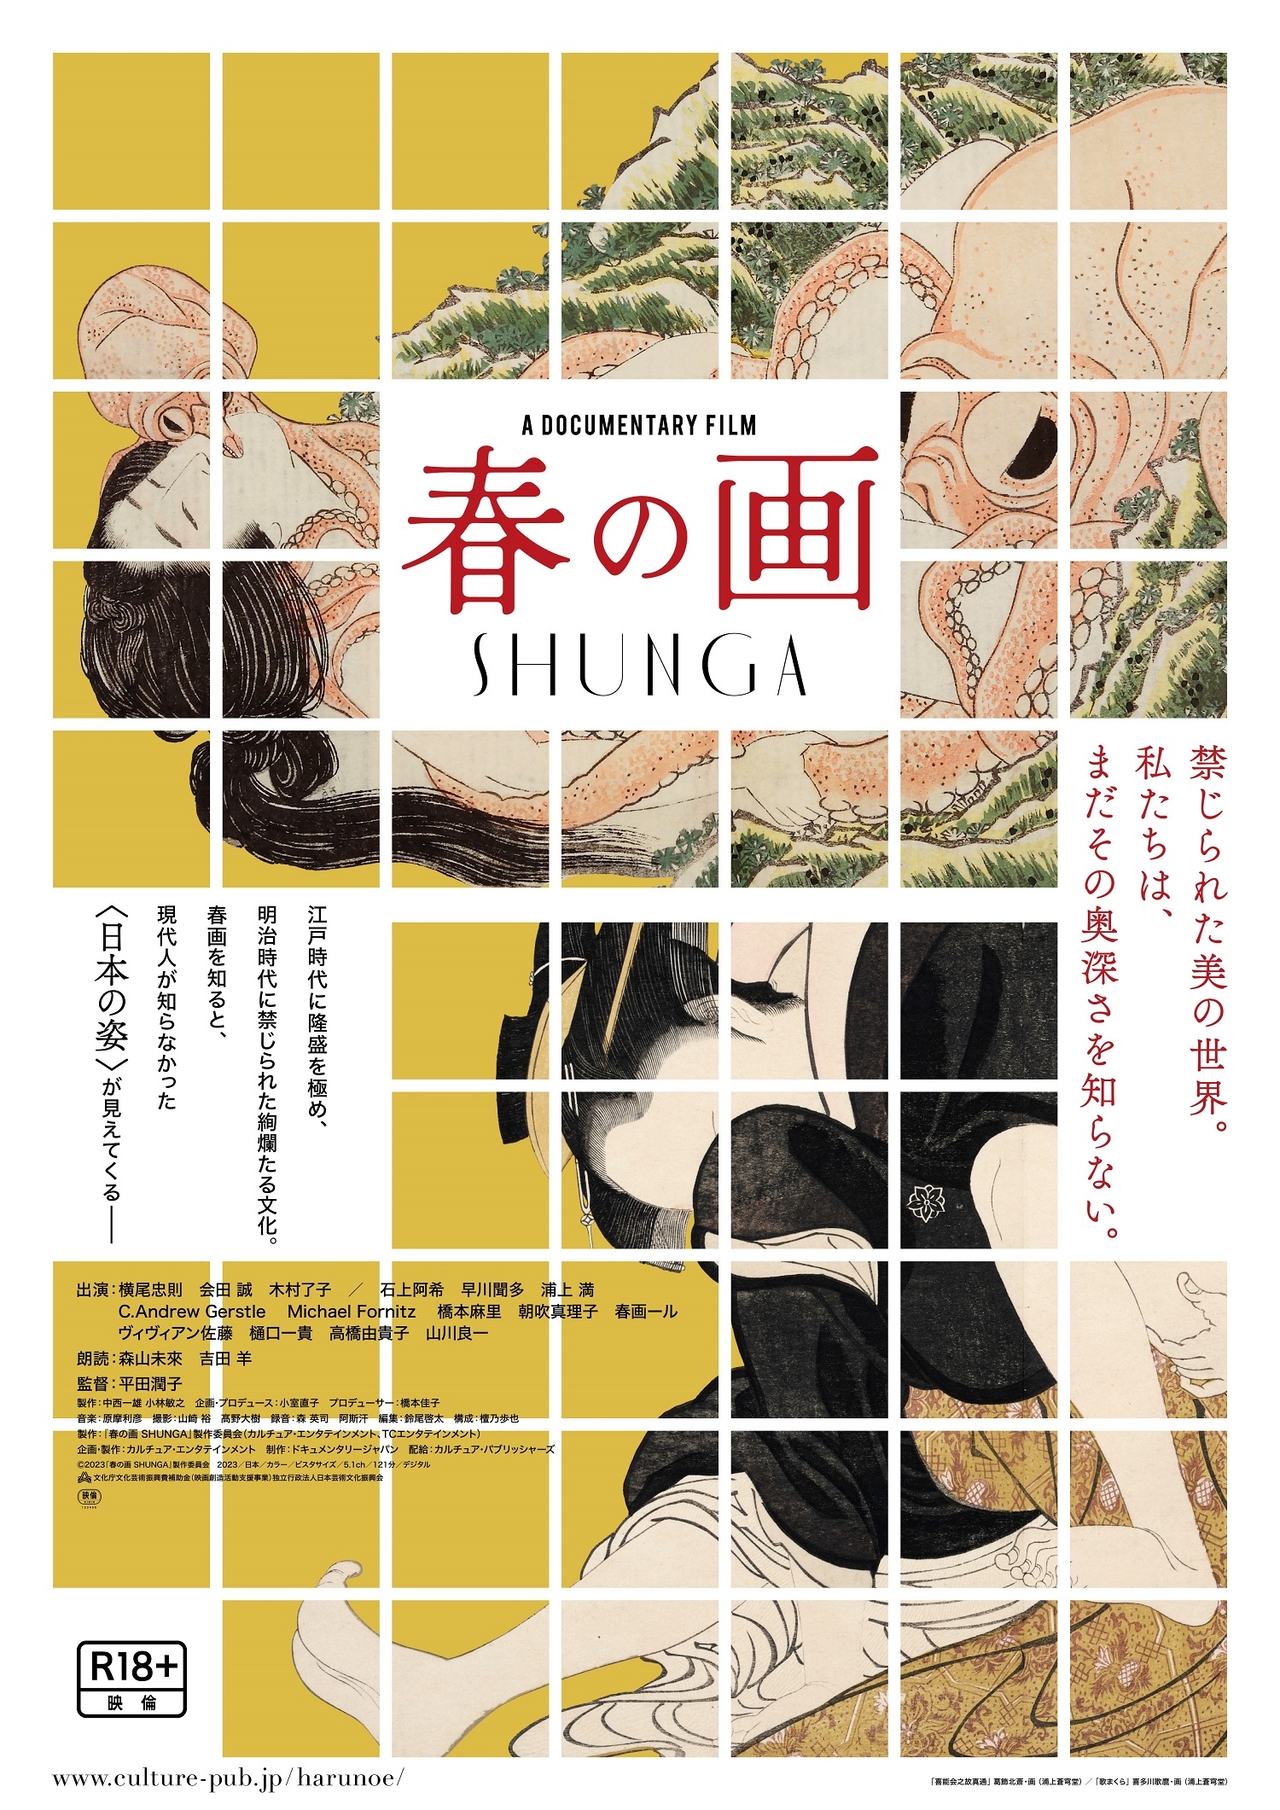 春画の多彩な表現、技巧、創造性に迫るドキュメント「春の画 SHUNGA」11月公開　R18＋、一部劇場で4K上映